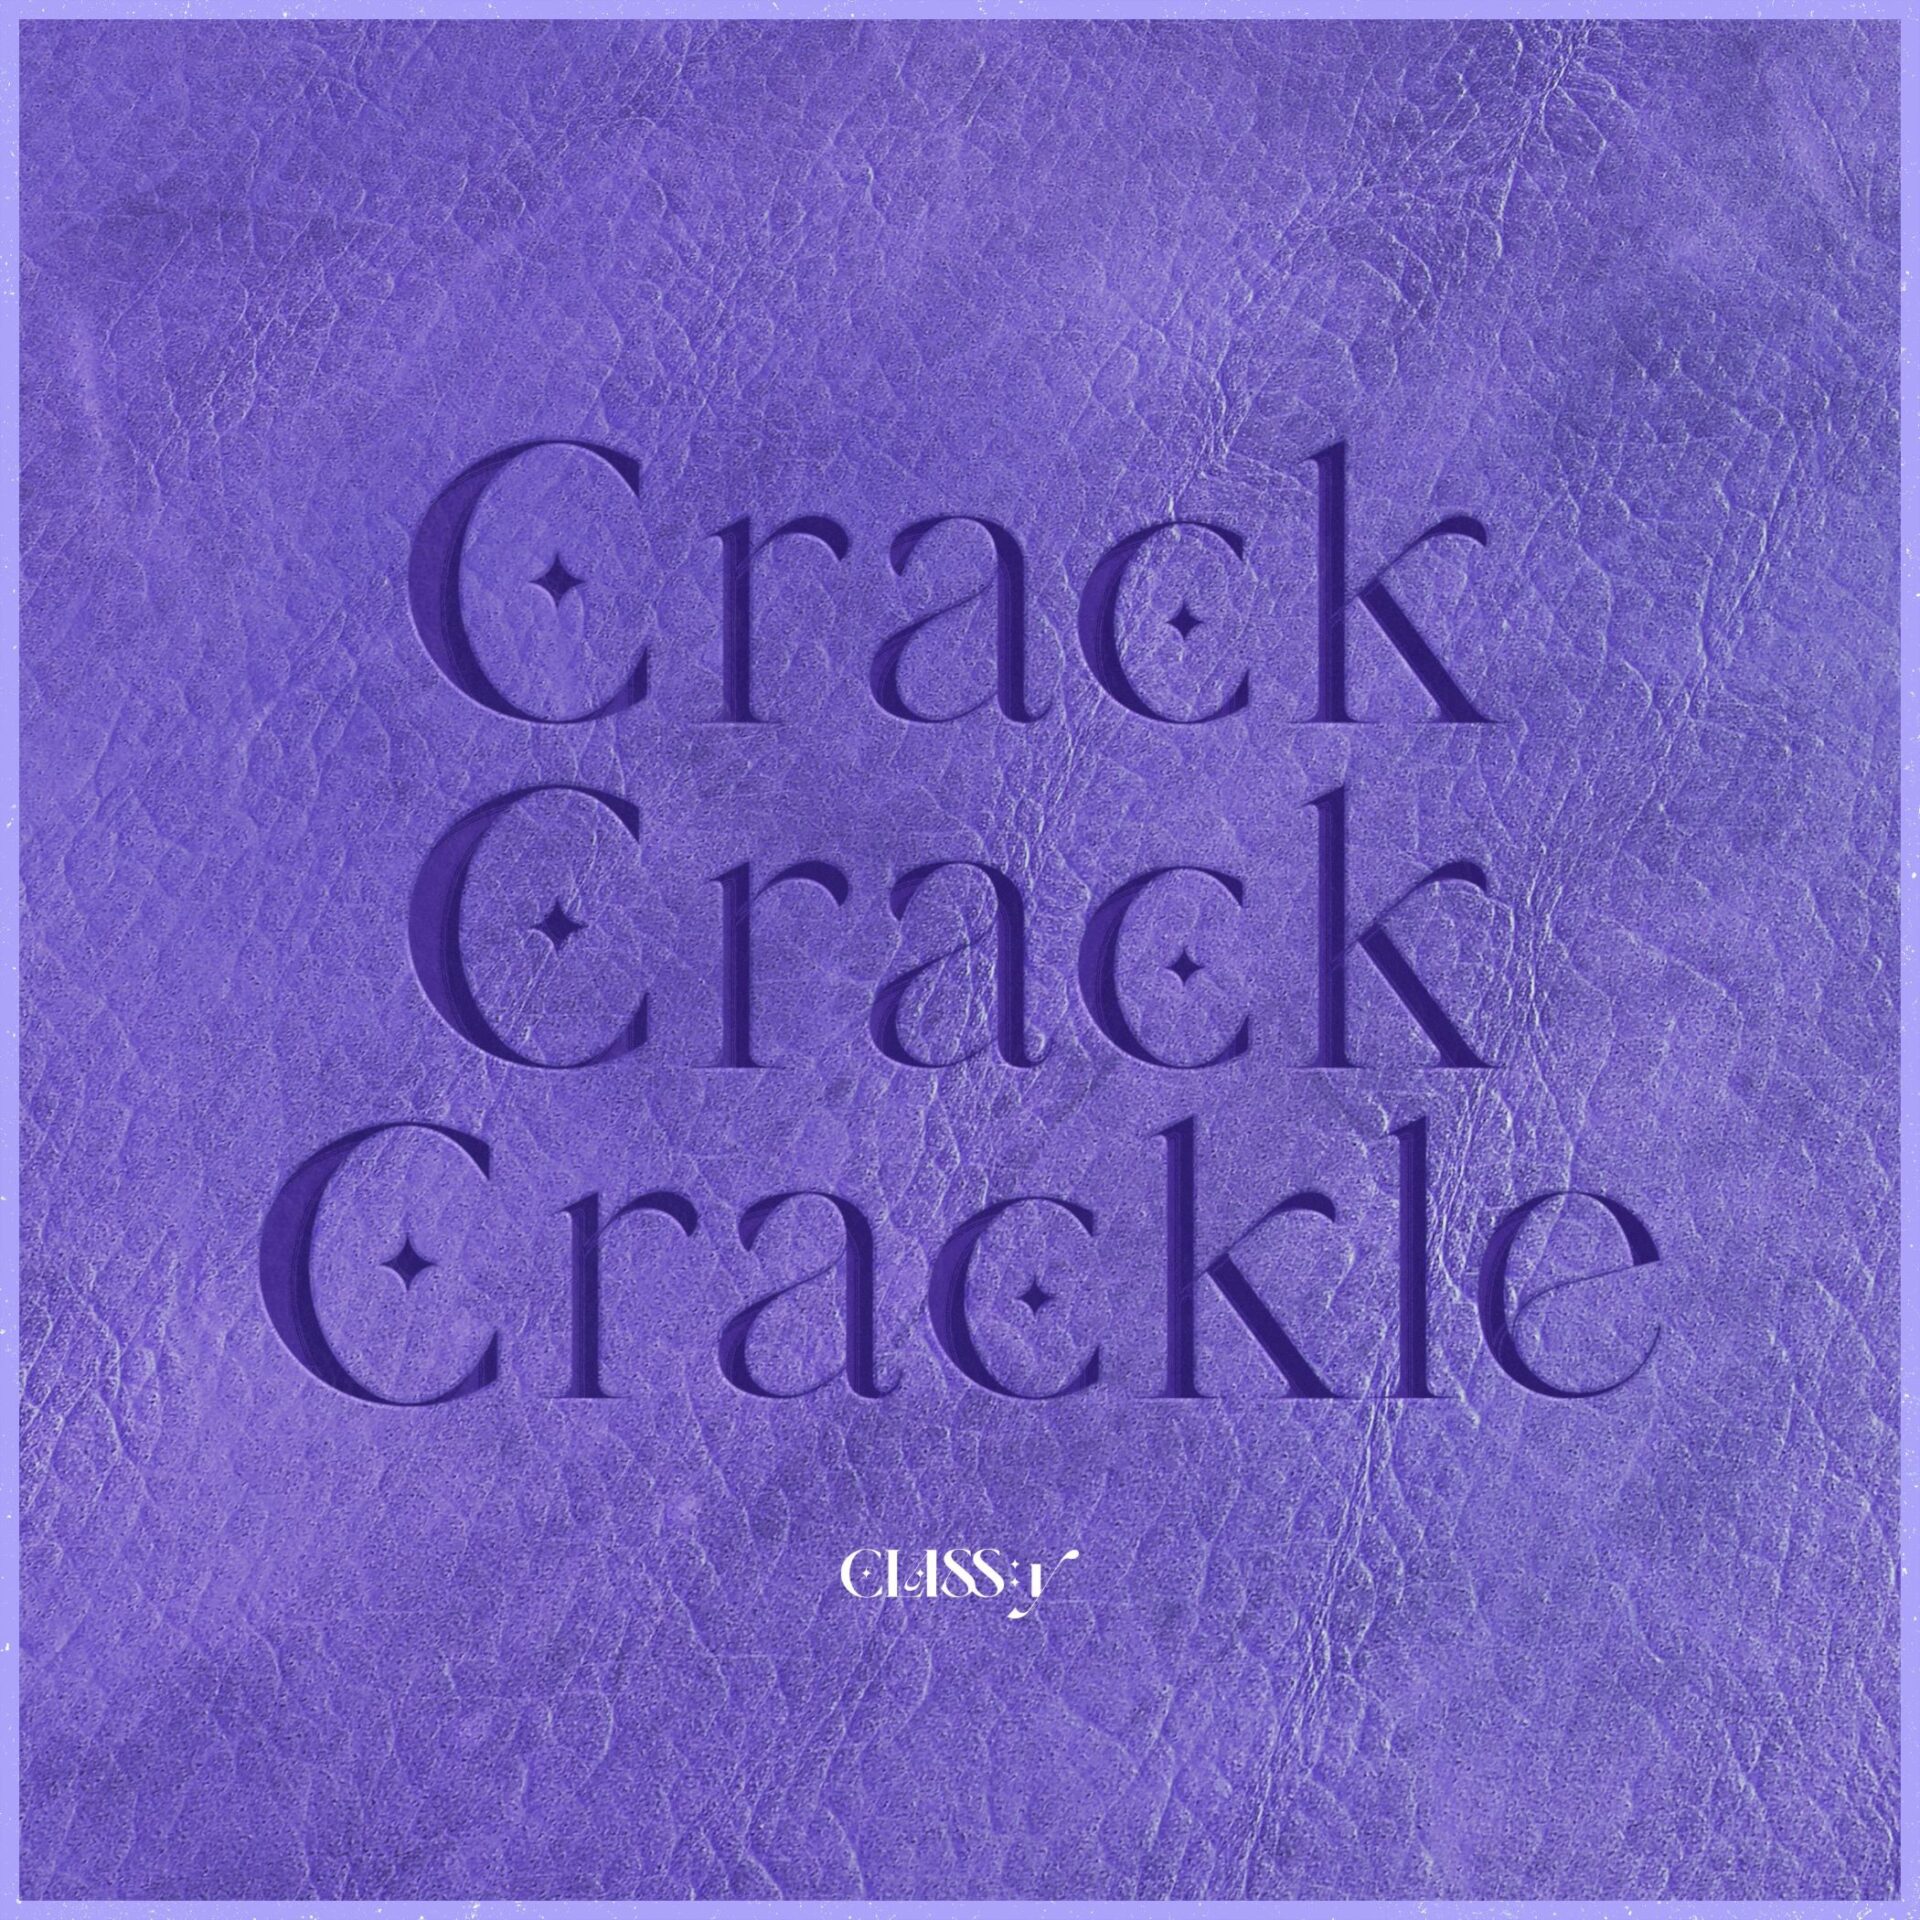 「Crack-Crack-Crackle」ジャケット